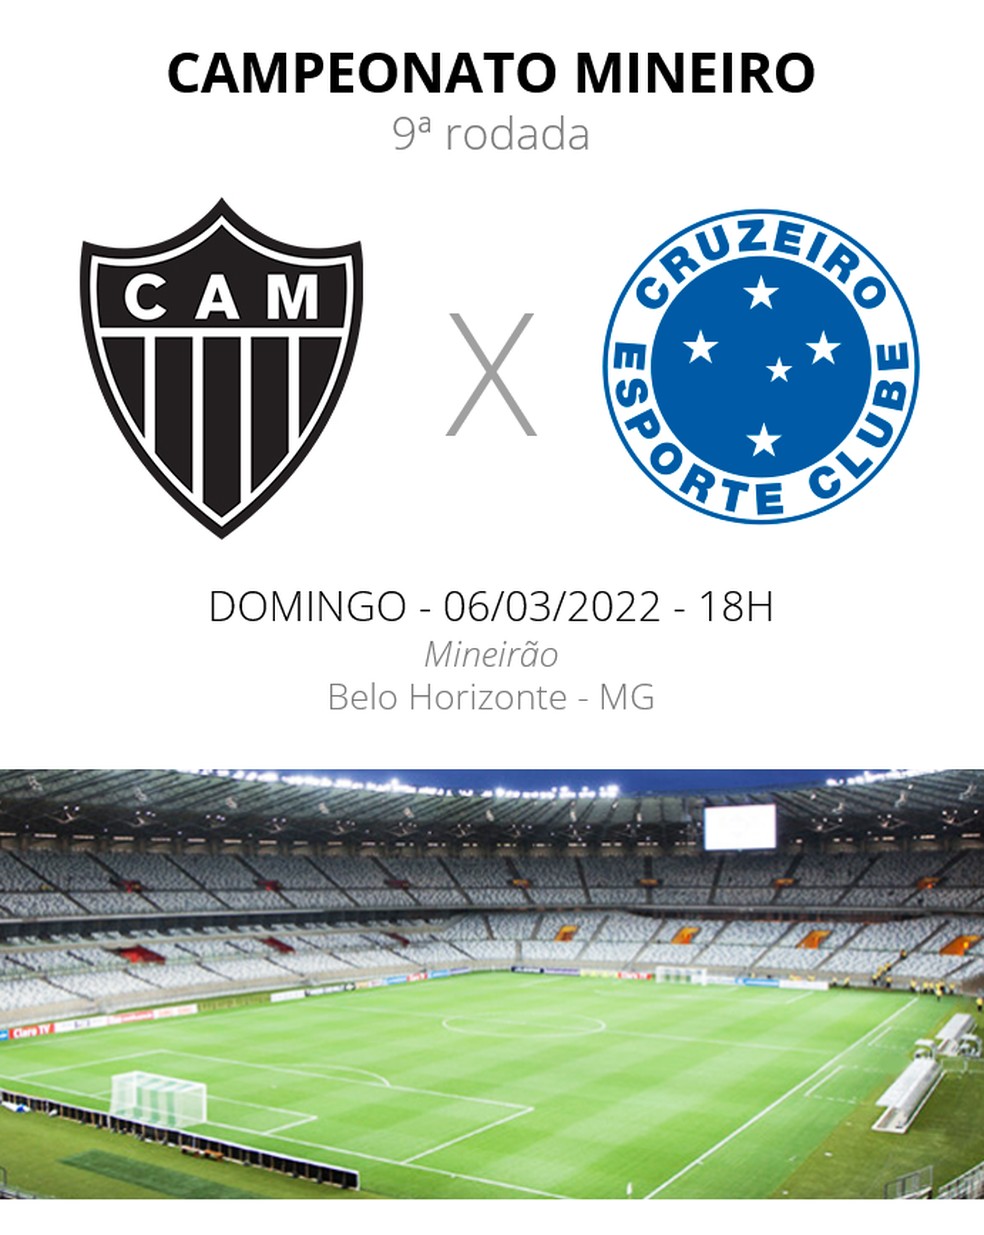 Atlético-MG x Cruzeiro: Saiba como assistir online AO VIVO ao jogo do BR